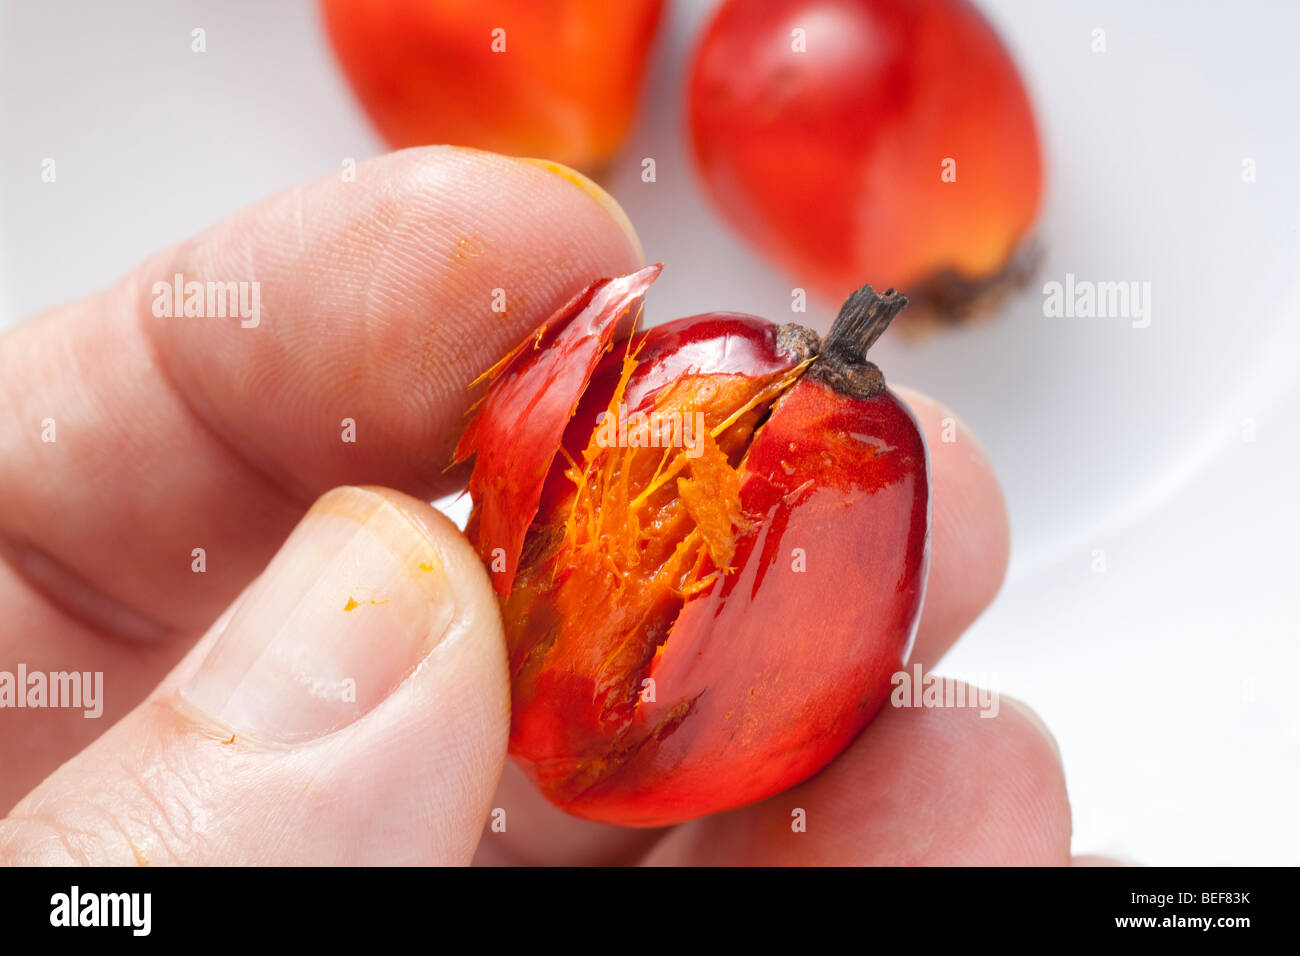 Ölpalme Frucht mit verletzter Haut zeigt die öligen Natur der Pulpa umgibt die Samen Stockfoto